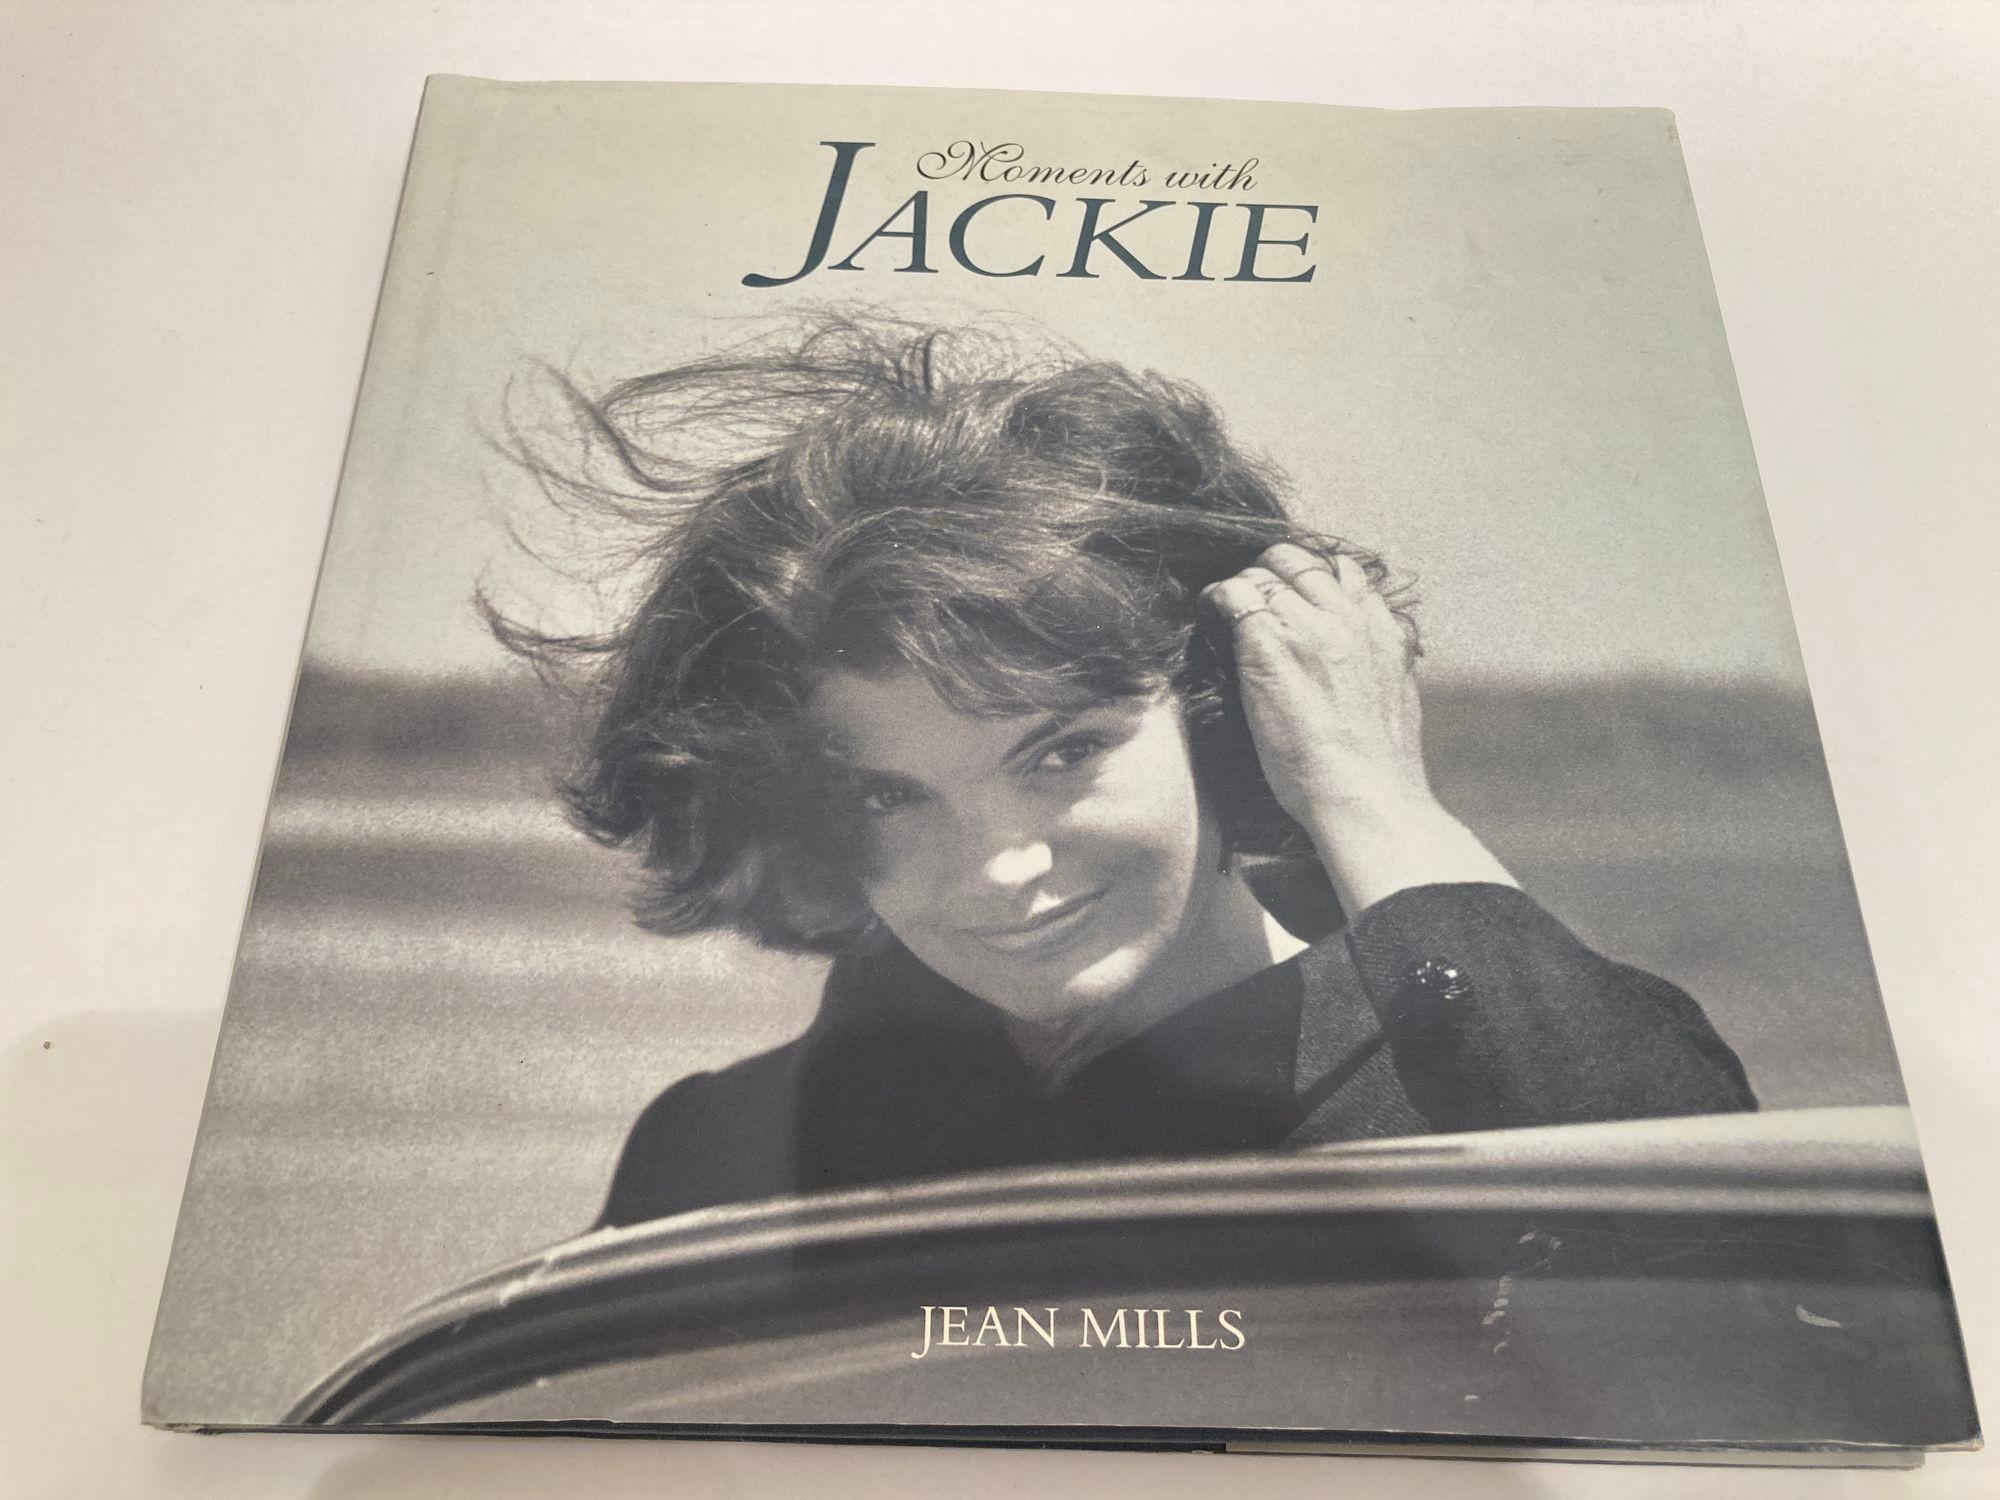 Moments avec Jackie par Jean Mills livre relié
Barnes & Noble Books, 1999 - Célébrités - 120 pages.
De superbes photographies en noir et blanc accompagnent un portrait en gros plan de Jacqueline Bouvier Kennedy Onassis.
Jacqueline Bouvier Kennedy